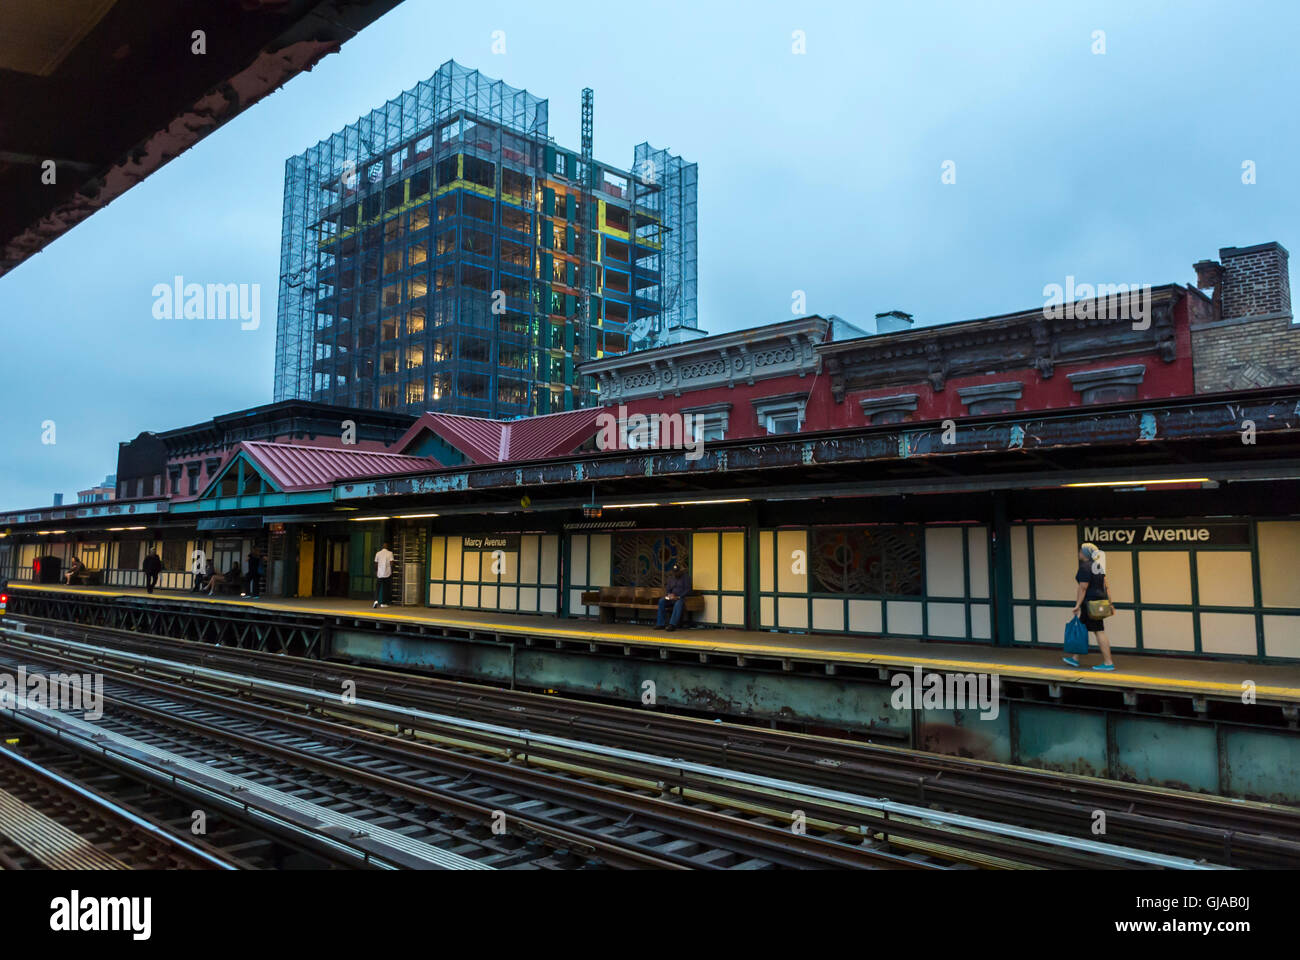 New York, NY, USA, Brooklyn Subway Station, Evening, Quay Platform, Marcy Avenue, Tracks at Dusk Stock Photo